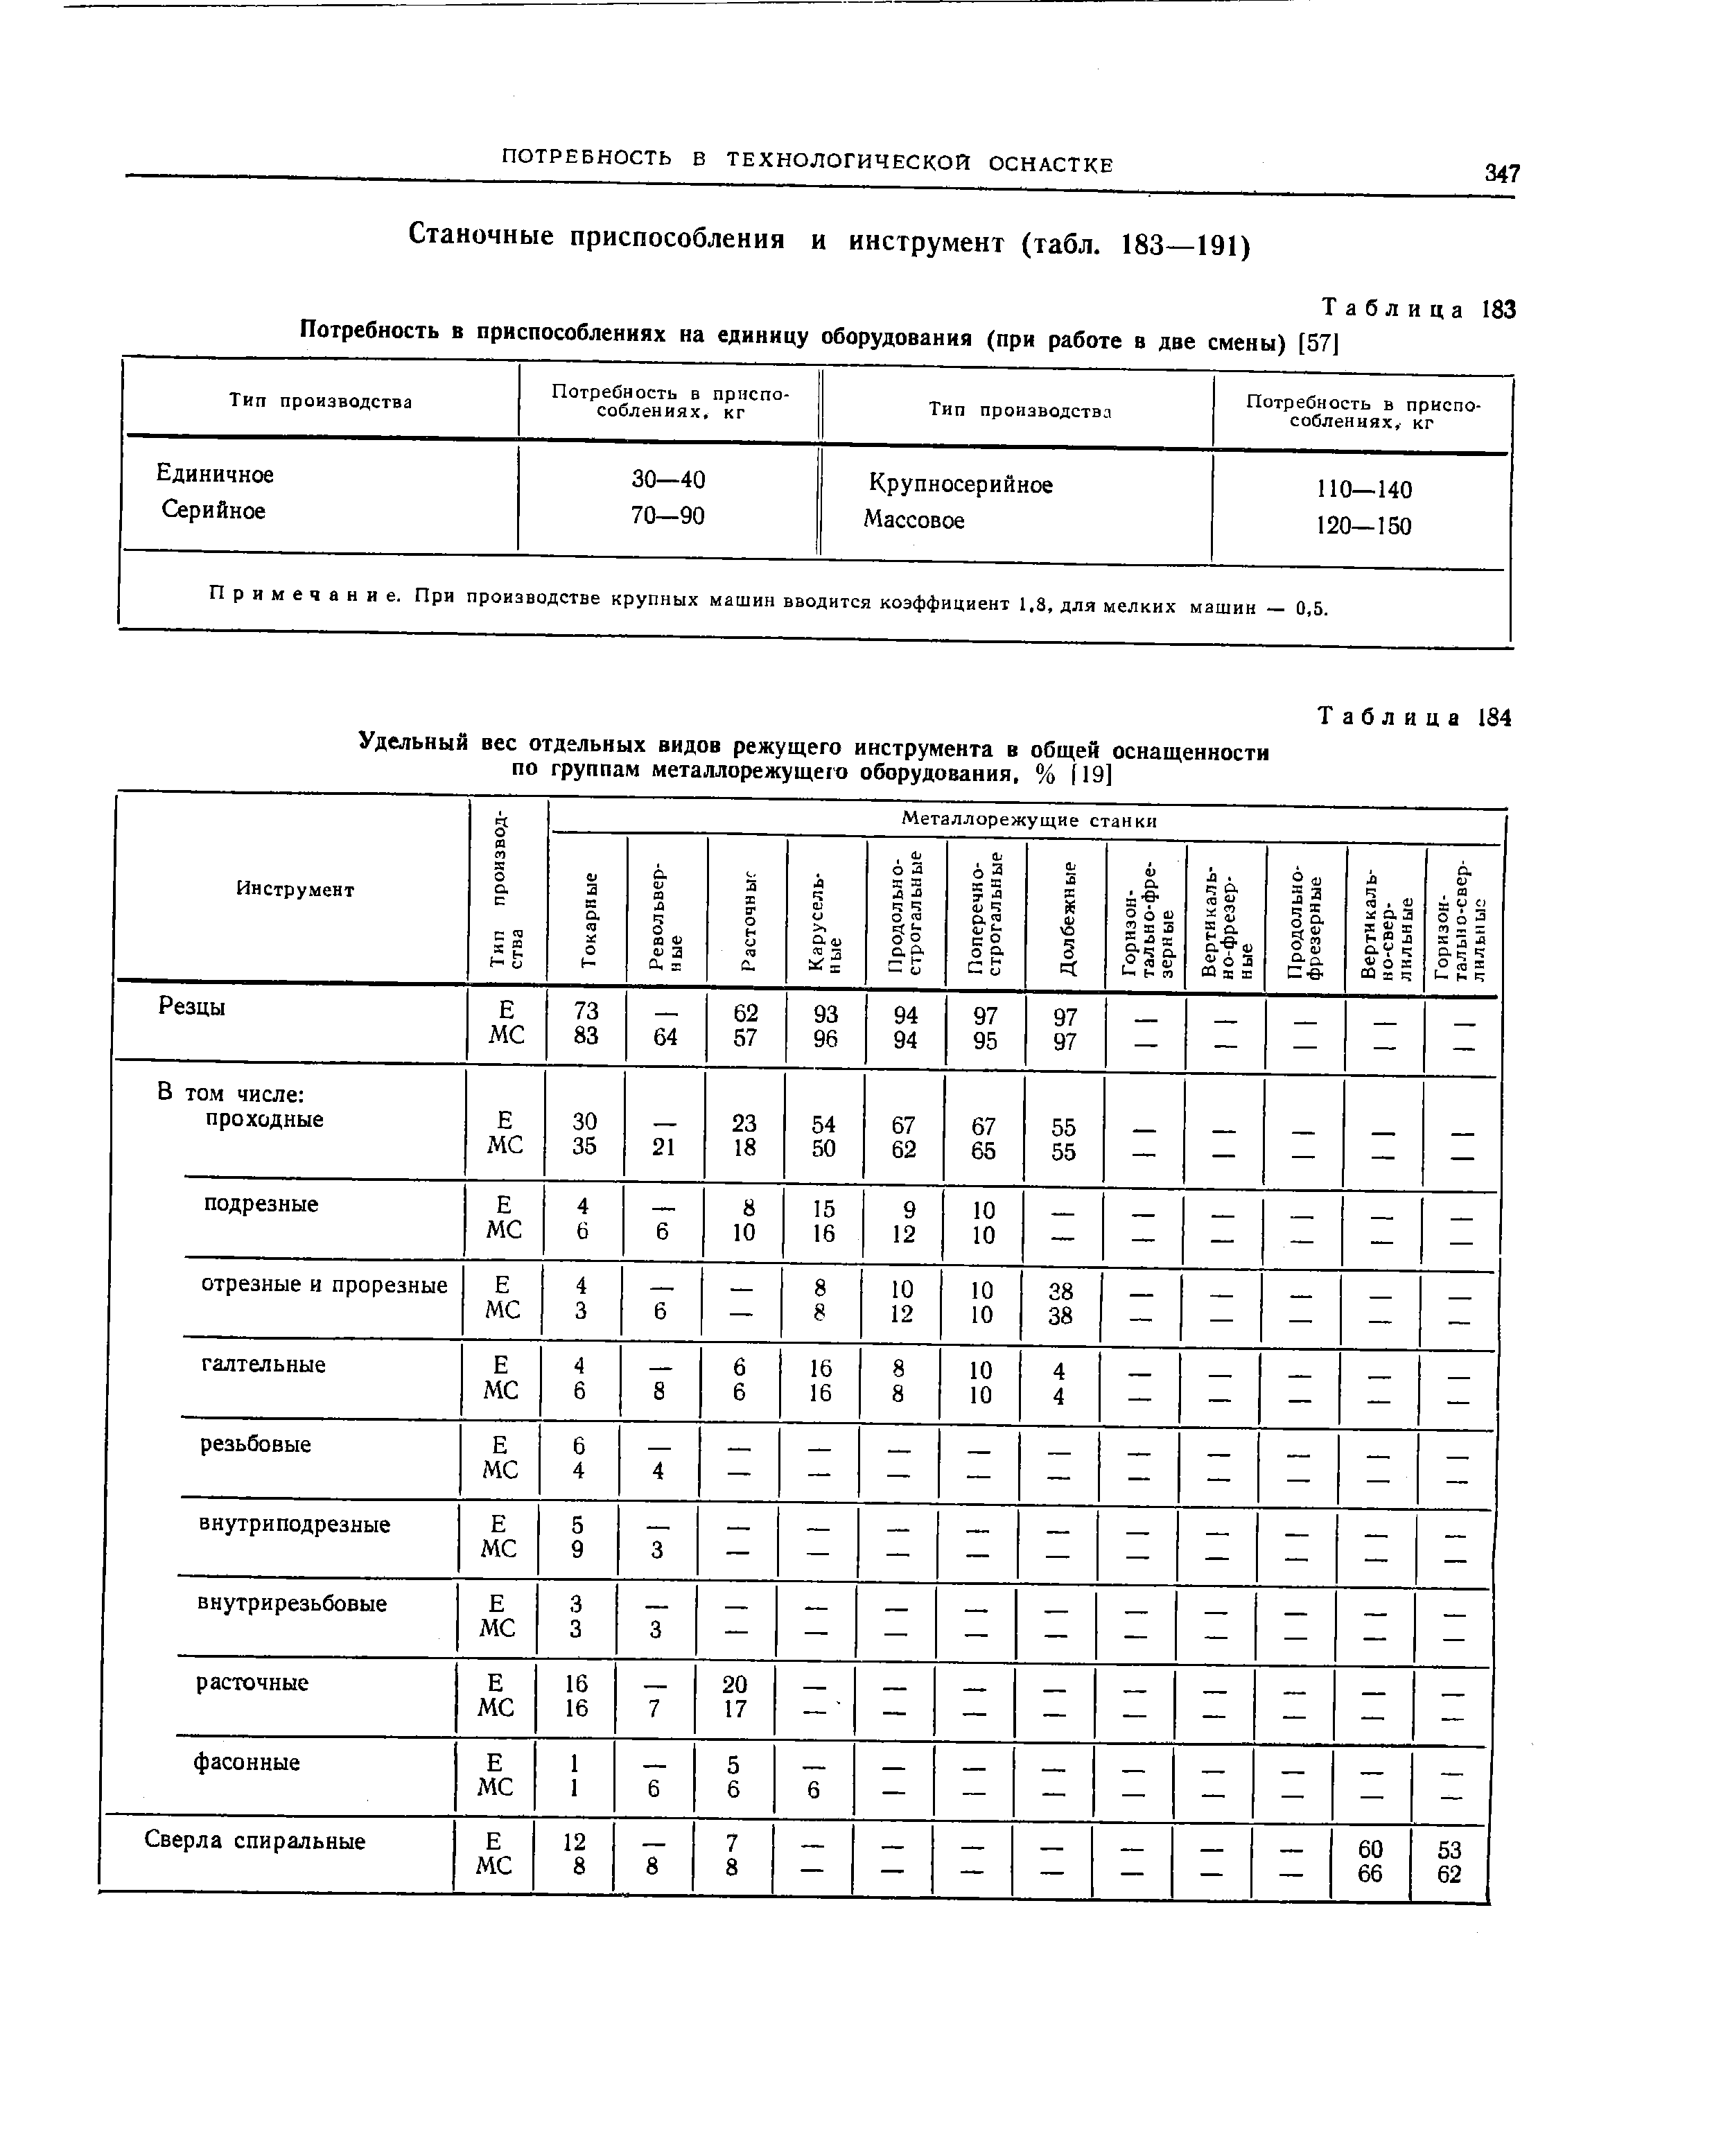 Таблица 183 Потребность в приспособлениях на единицу оборудования (при работе в две смены) [57]
